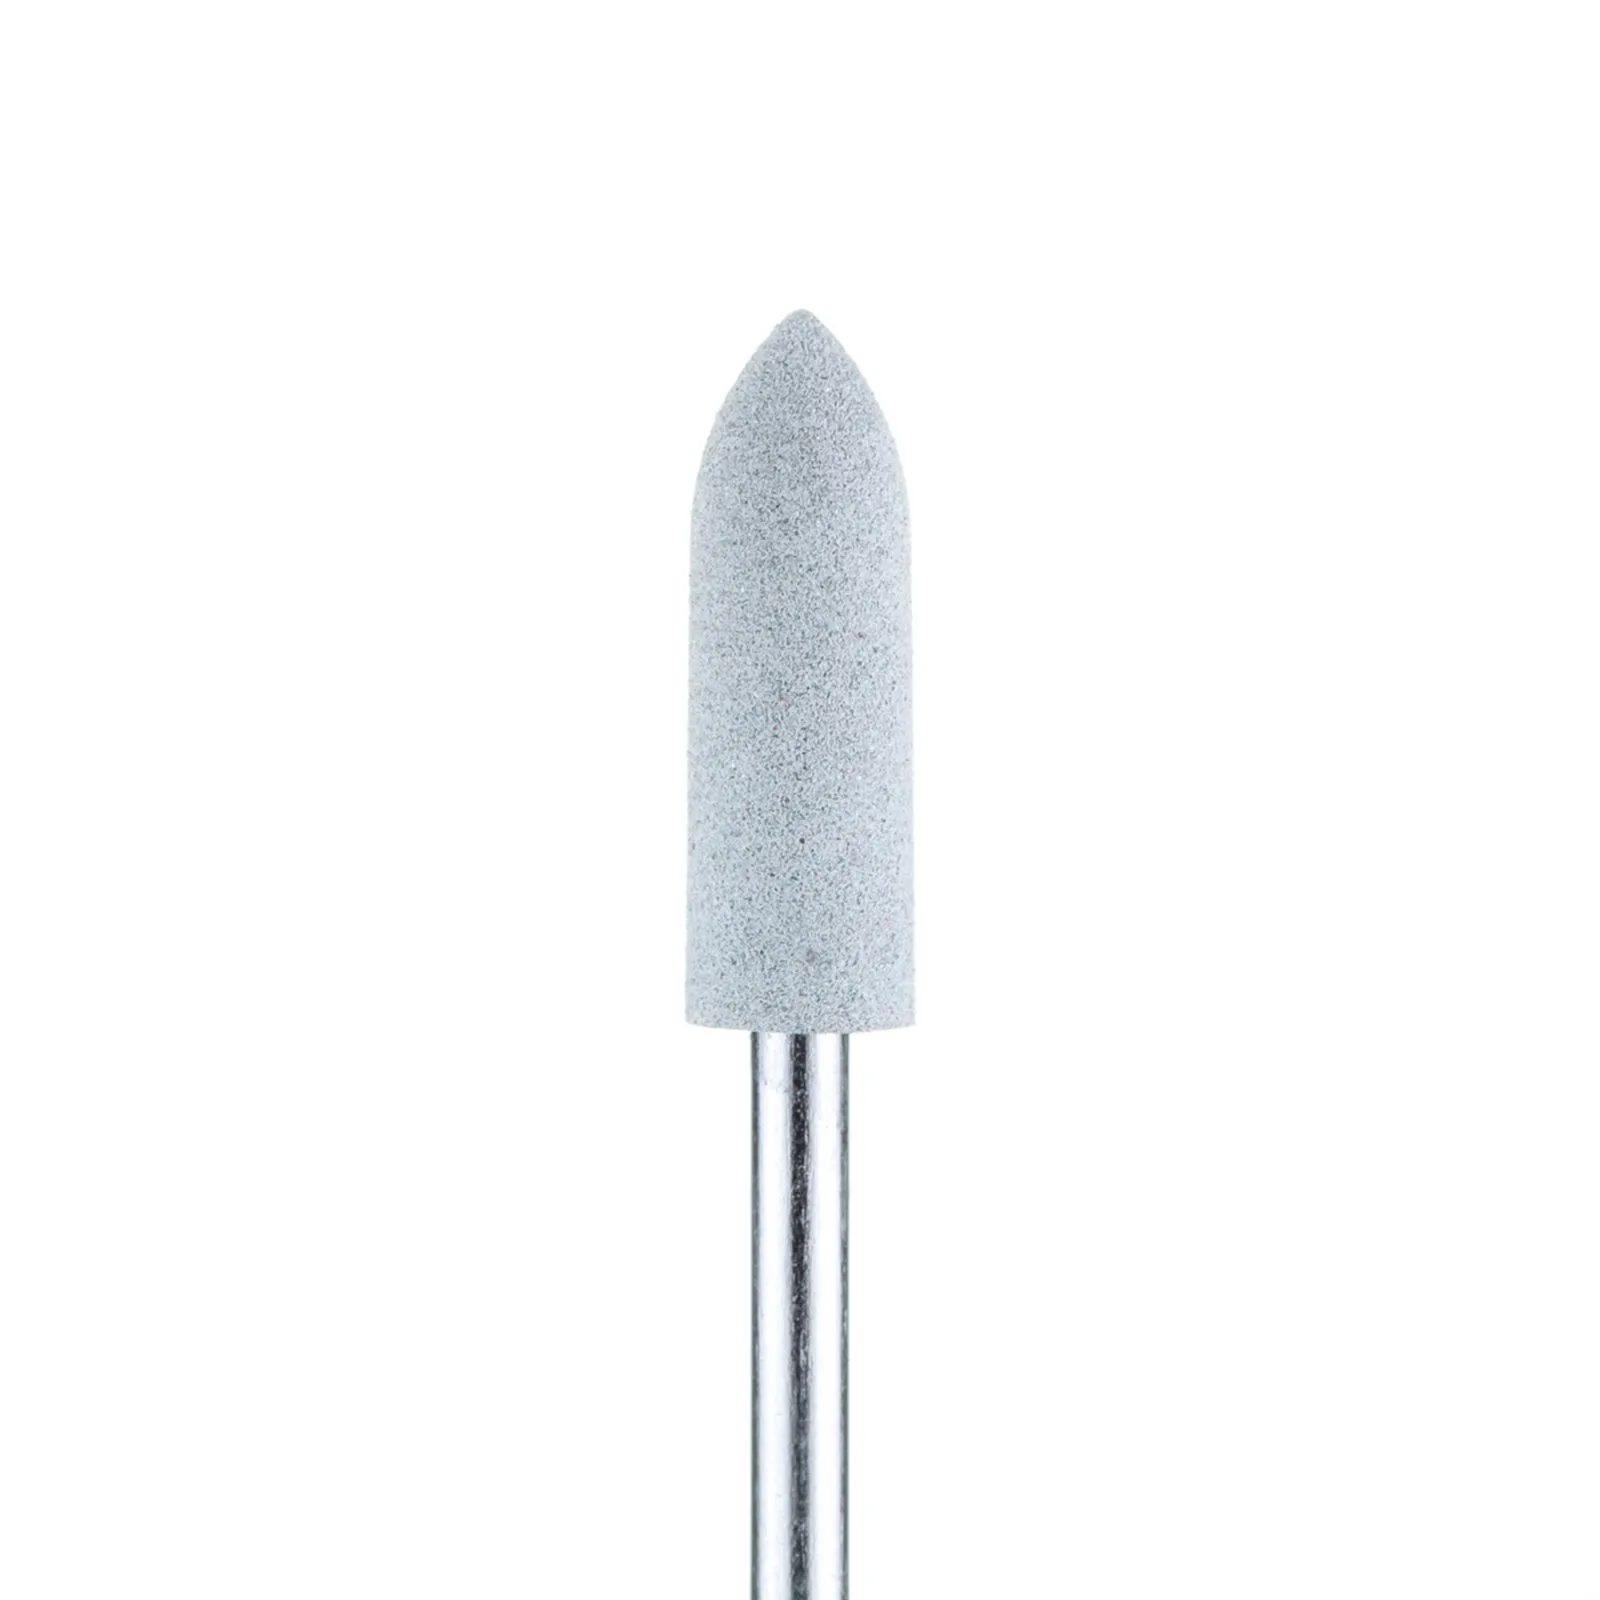 Полировщик закругленный цилиндр силиконовый темно-серый (диаметр 5 мм)